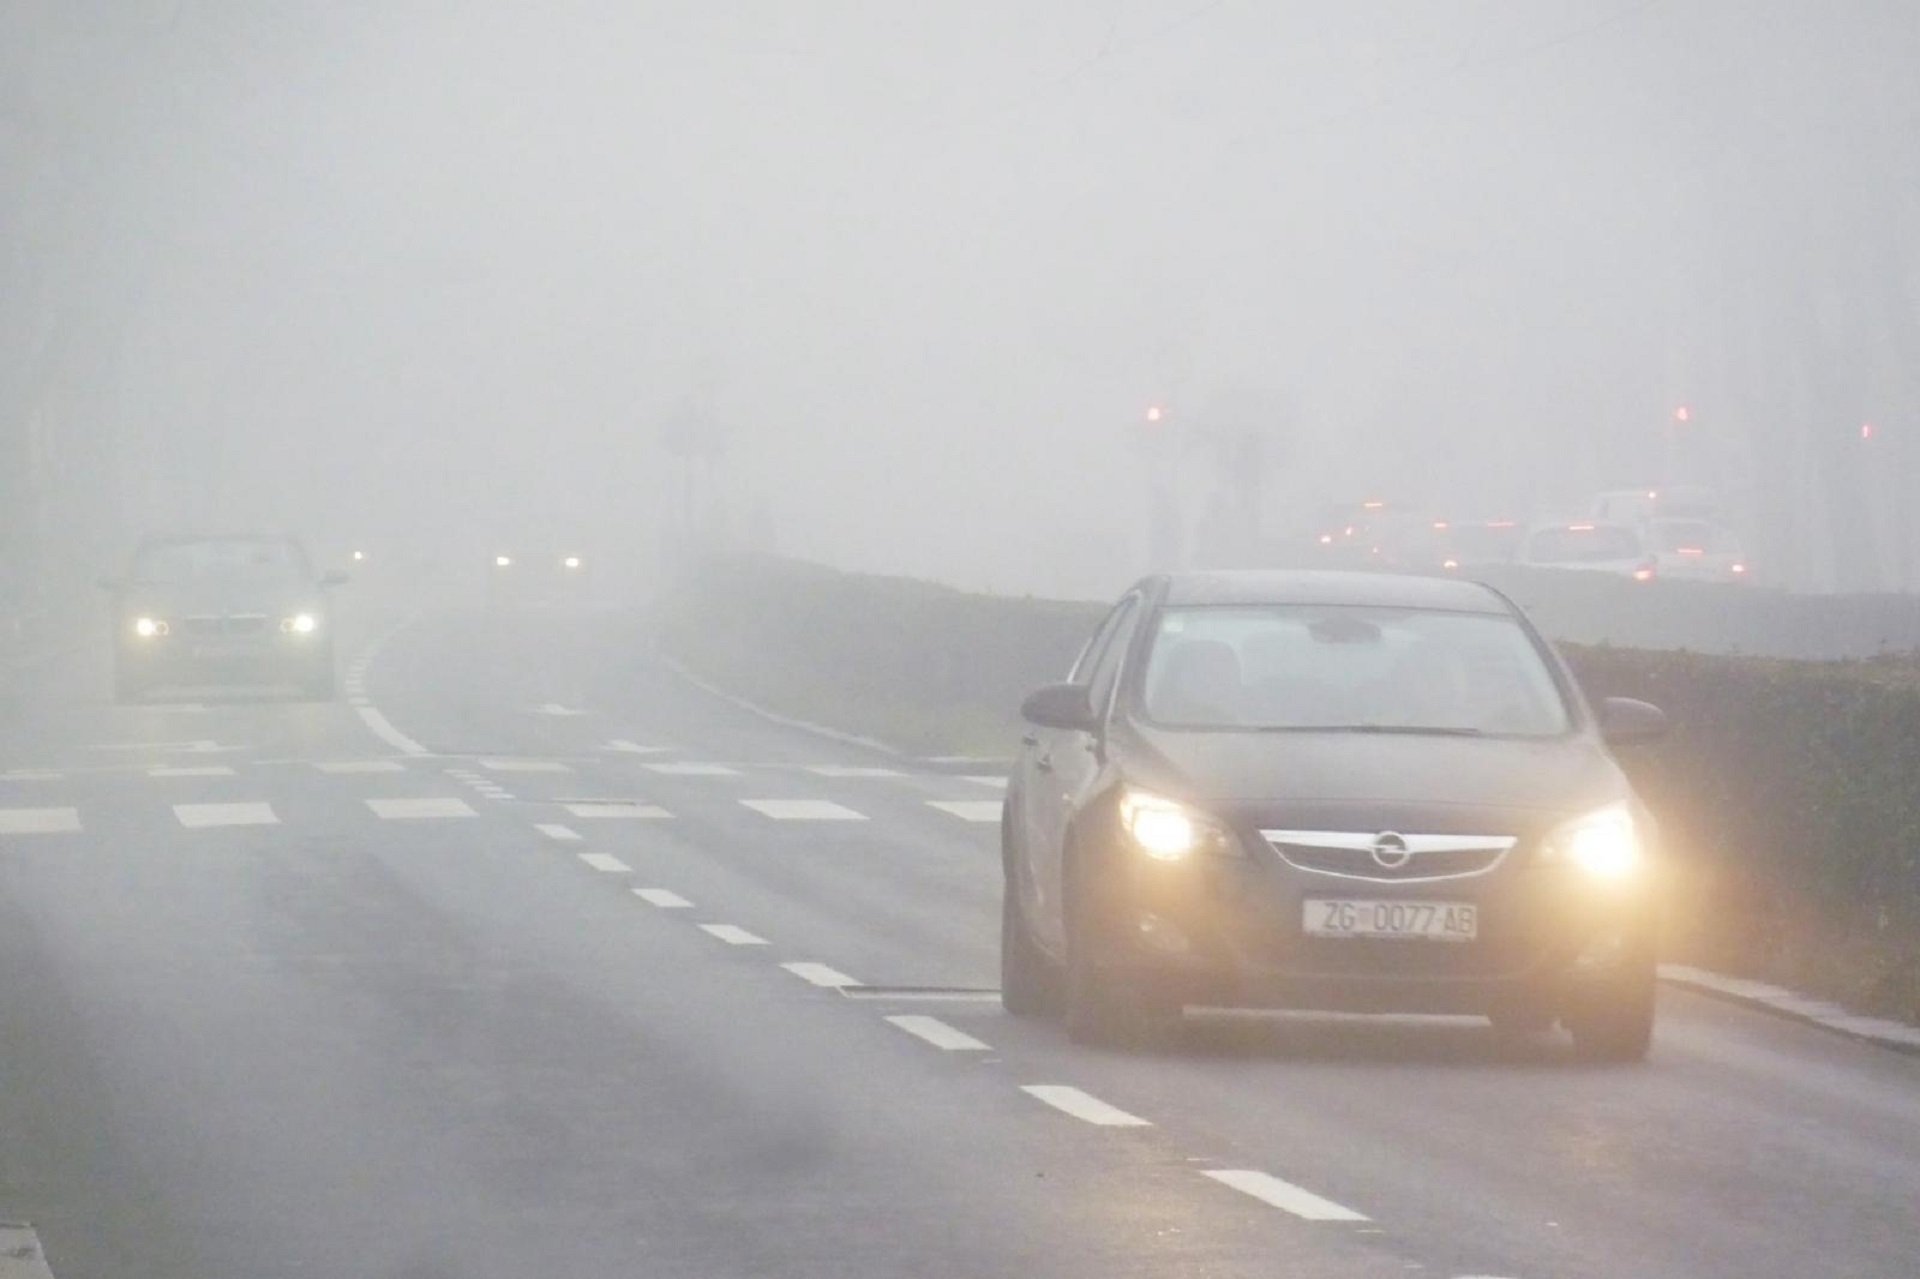 08.01.2014., Zagreb - Nakon nekoliko dana lijepog vremena, nad grad se jutros spustila gusta magla koja je vozacima smanjivala vidljivost u prometu.
Photo: Tomislav Miletic/PIXSELL